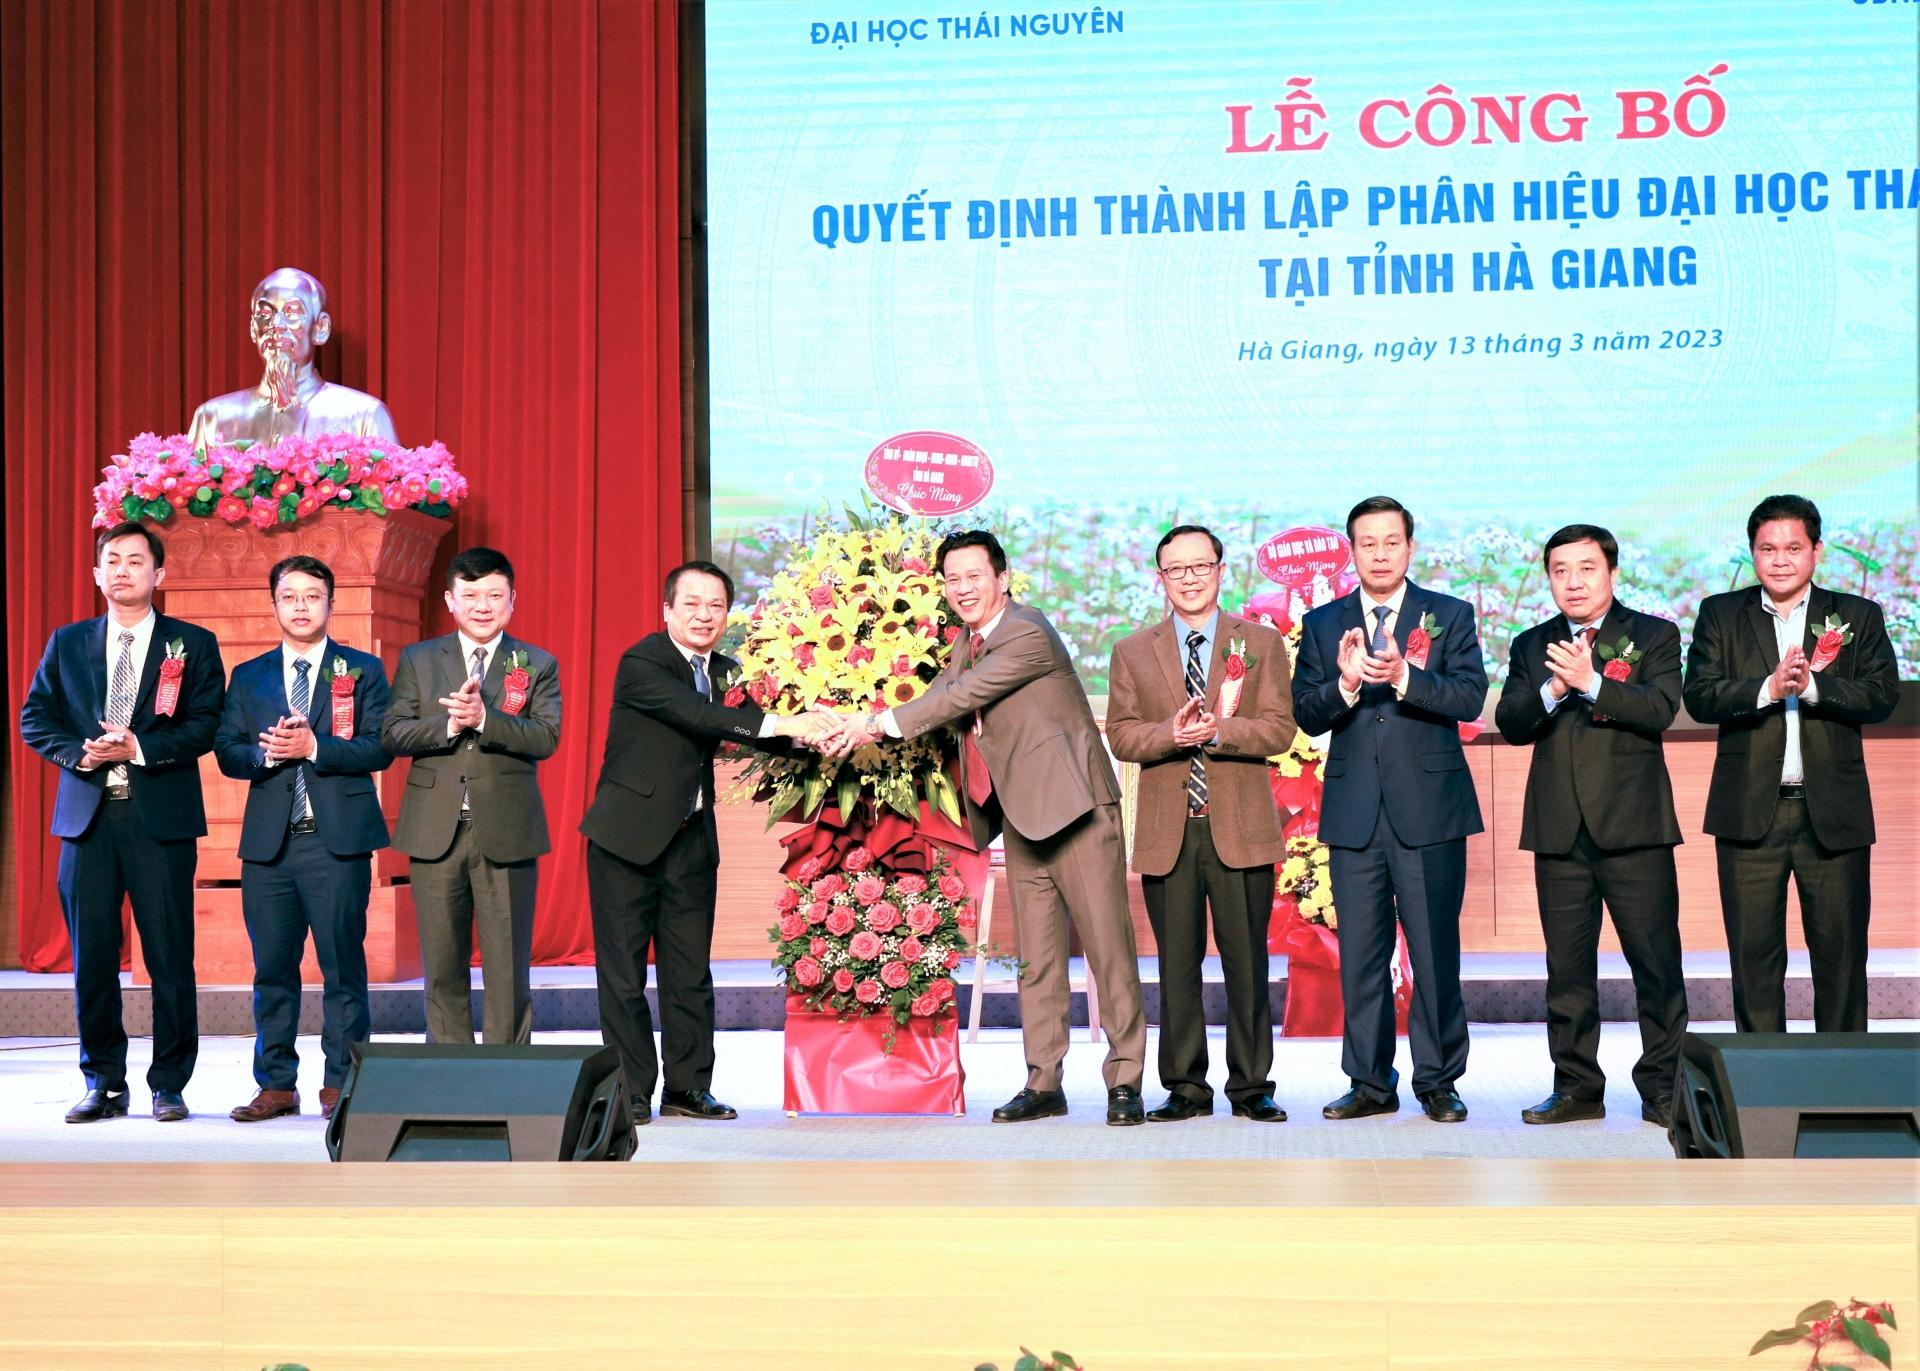 Các đồng chí lãnh đạo tỉnh tặng hoa chúc mừng Phân hiệu Đại học Thái Nguyên tại tỉnh Hà Giang